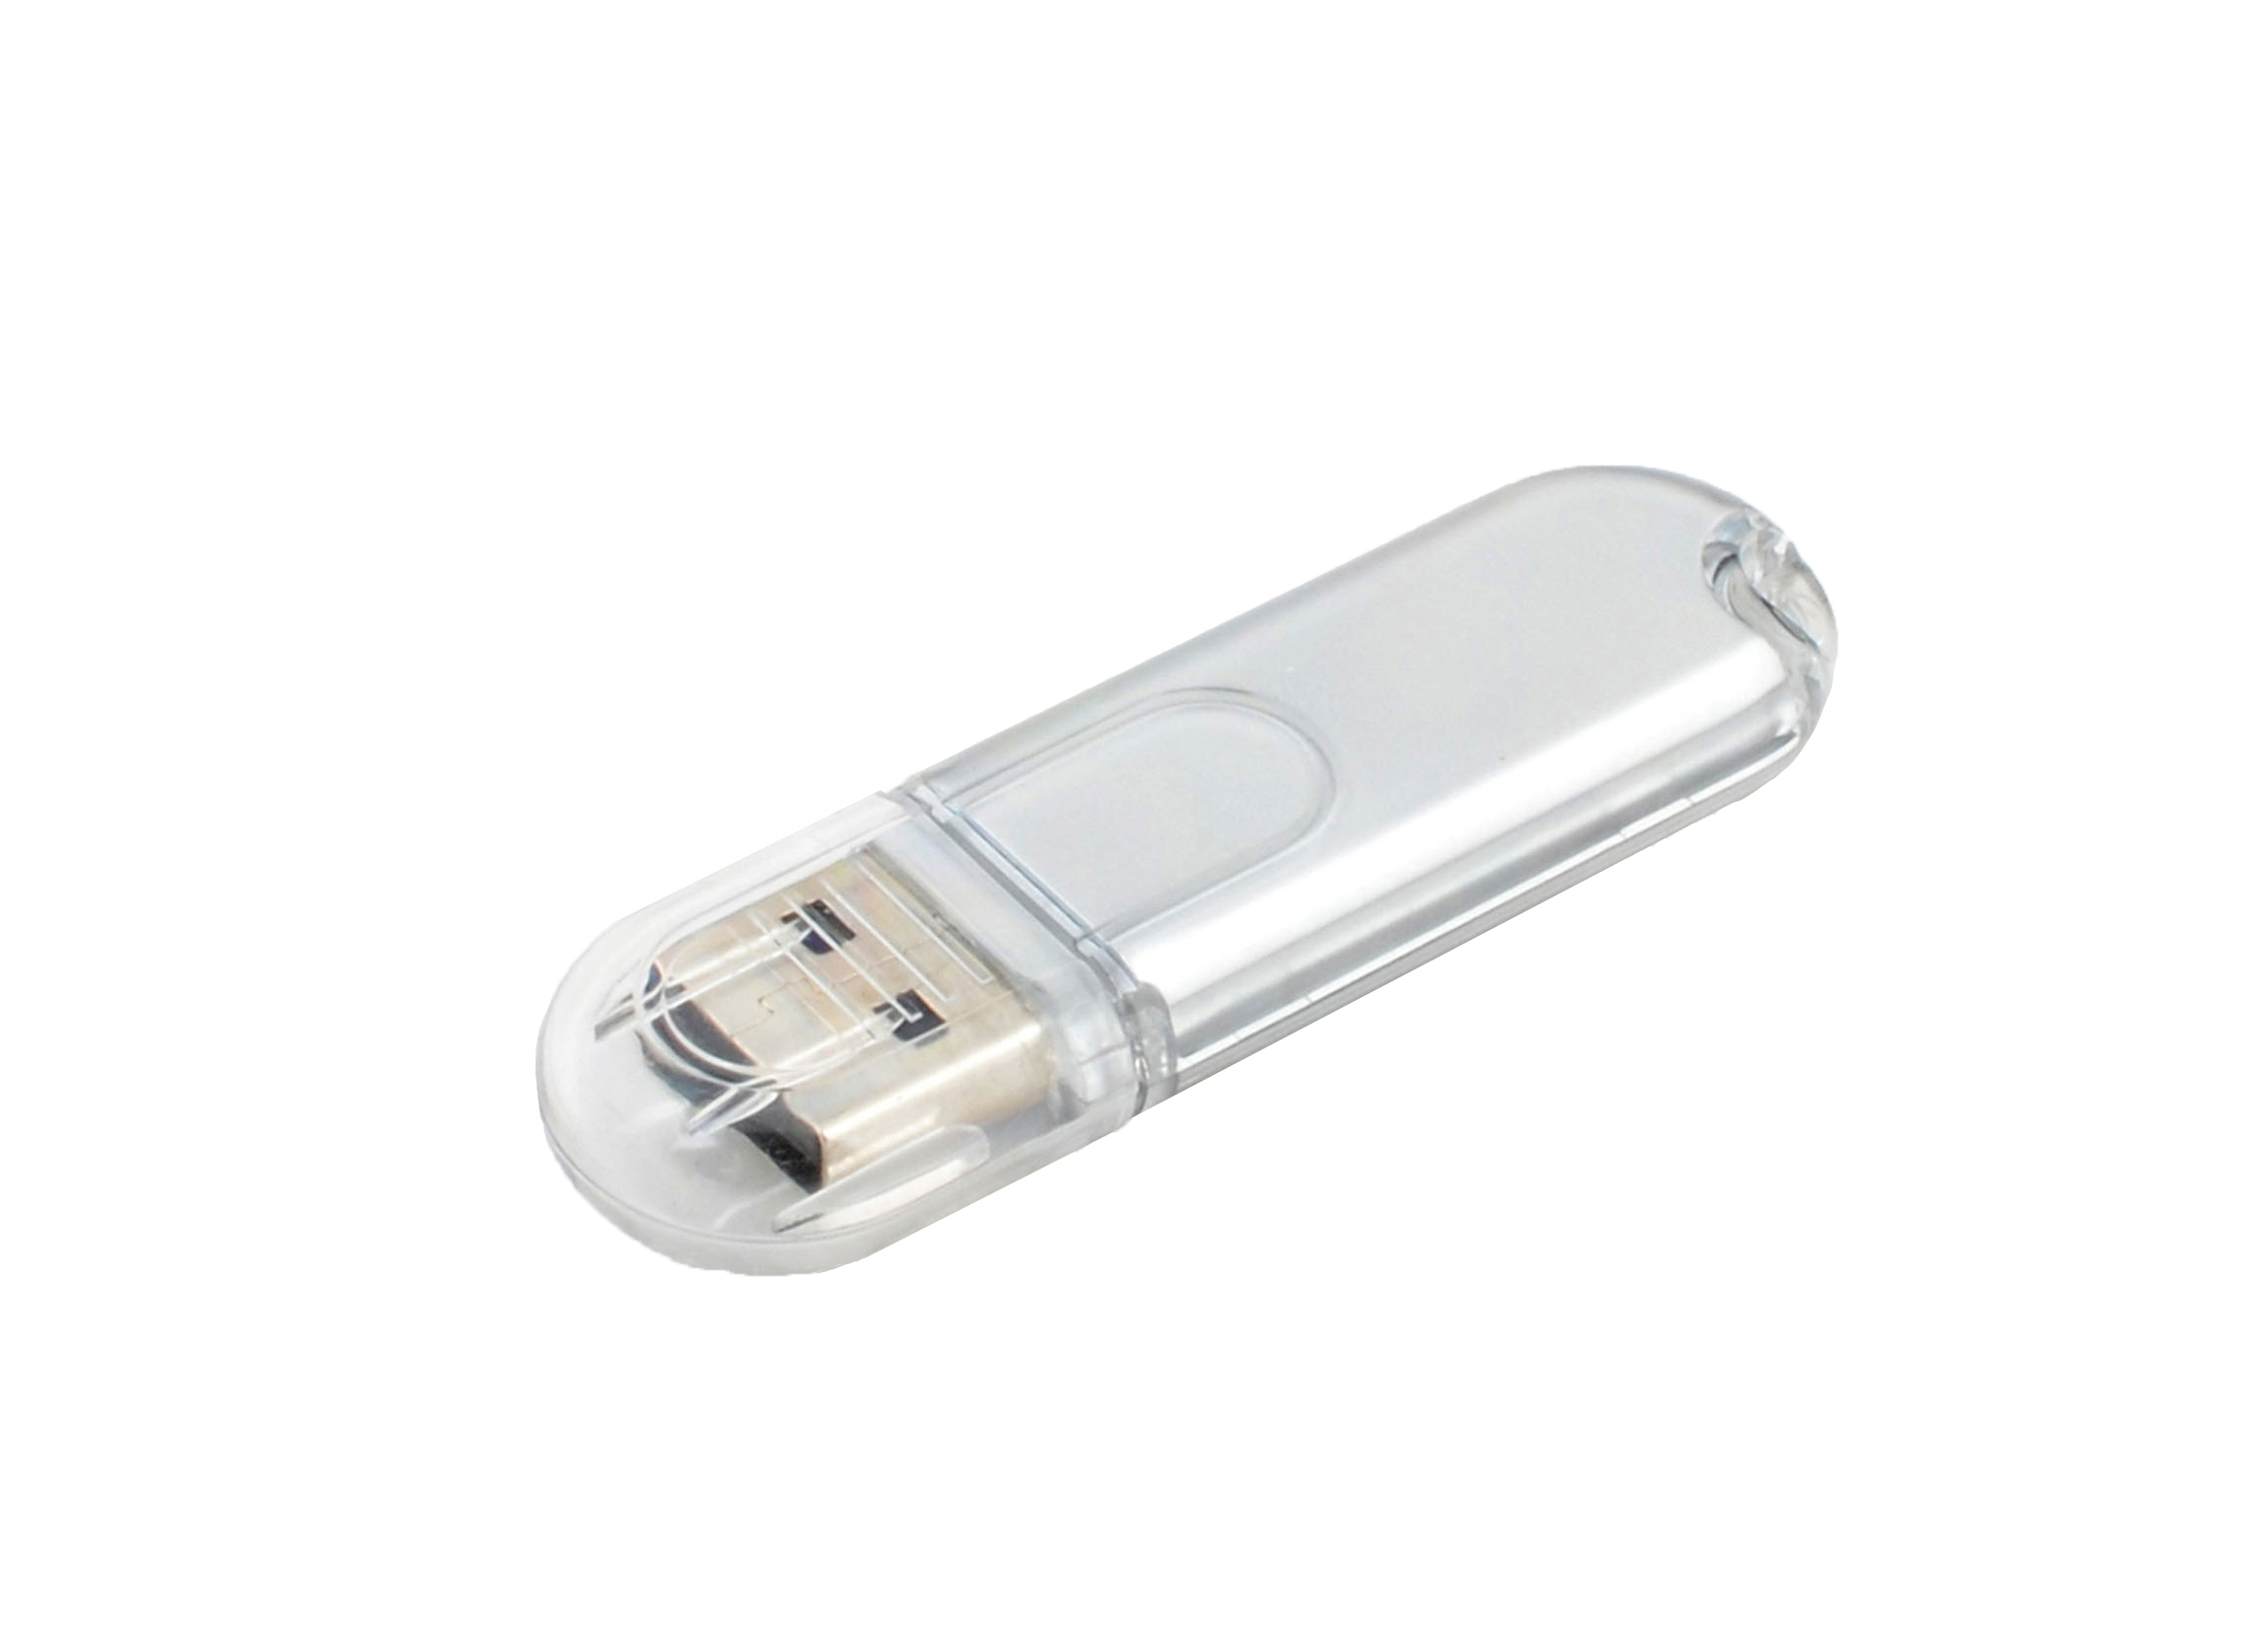 Classic USB flash drive DEPORT USB 3.0 silver